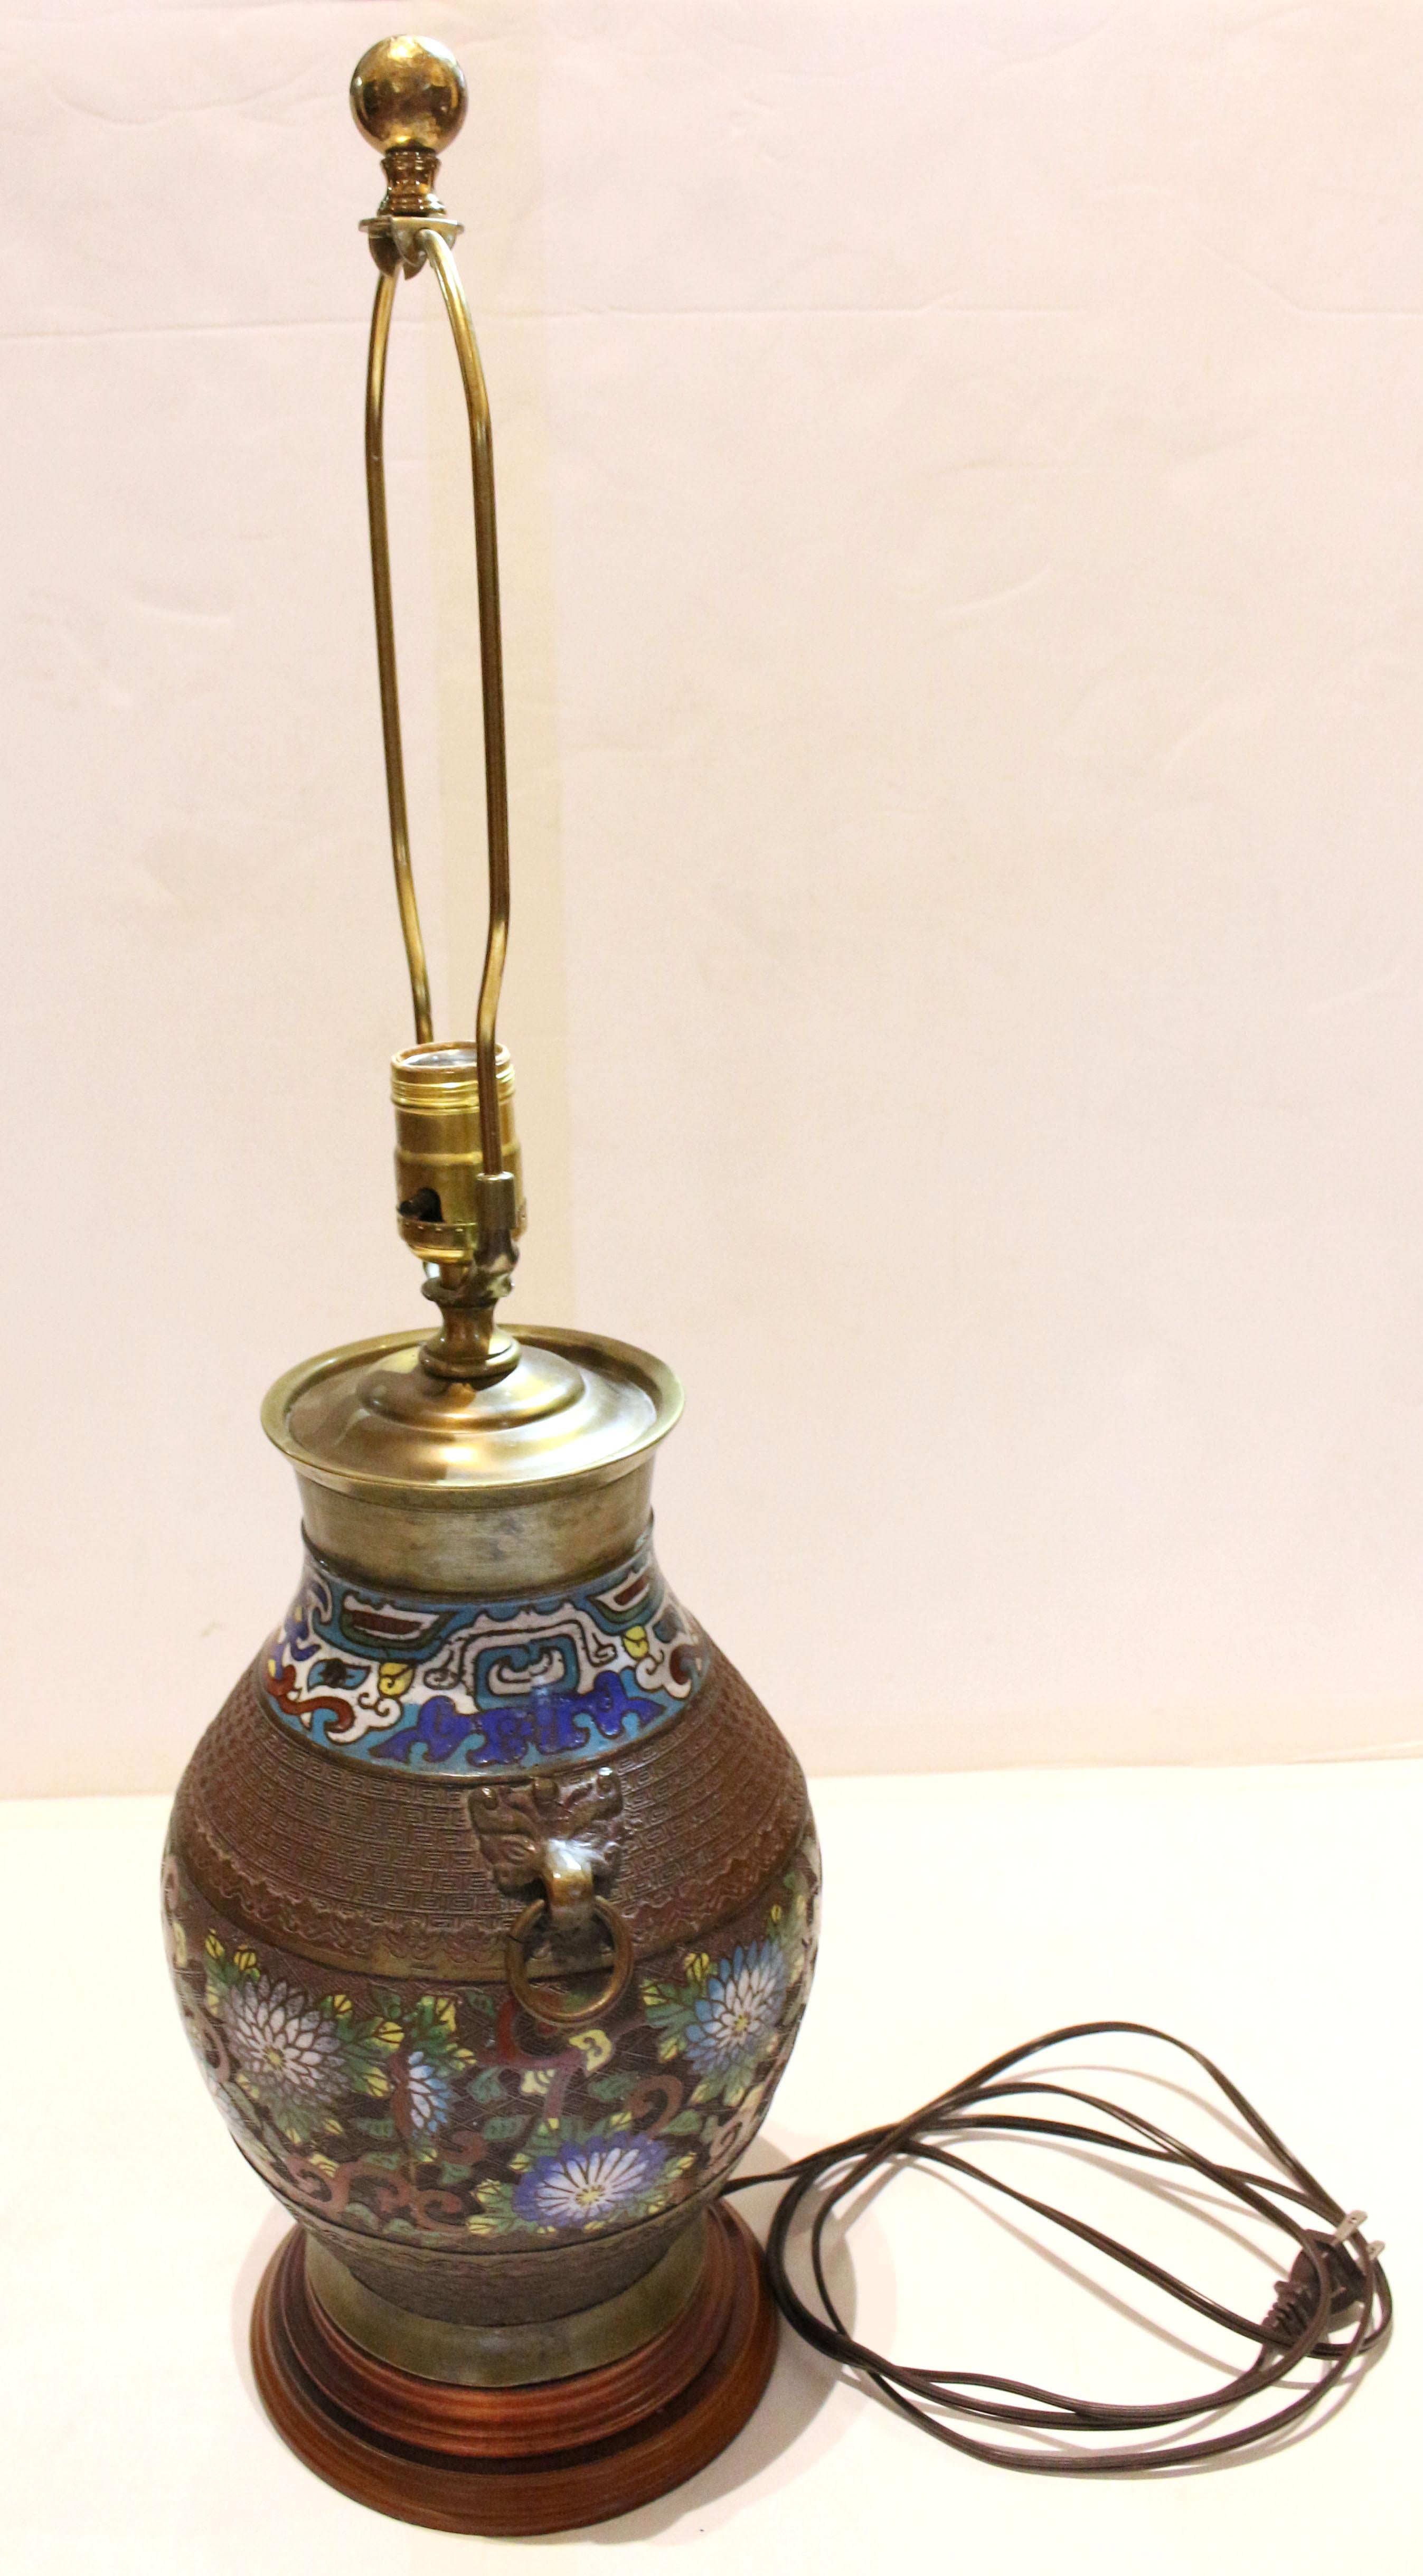 Japanische Vasenlampe aus Bronze und Champlevé aus dem späten 19. Archaisches Design. Die Vase wurde irgendwann im 20. Jahrhundert zu einer Lampe umfunktioniert. Schöne Champlevé-Arbeit mit Pfingstrosen und Ranken. Ringgriffe. 
17